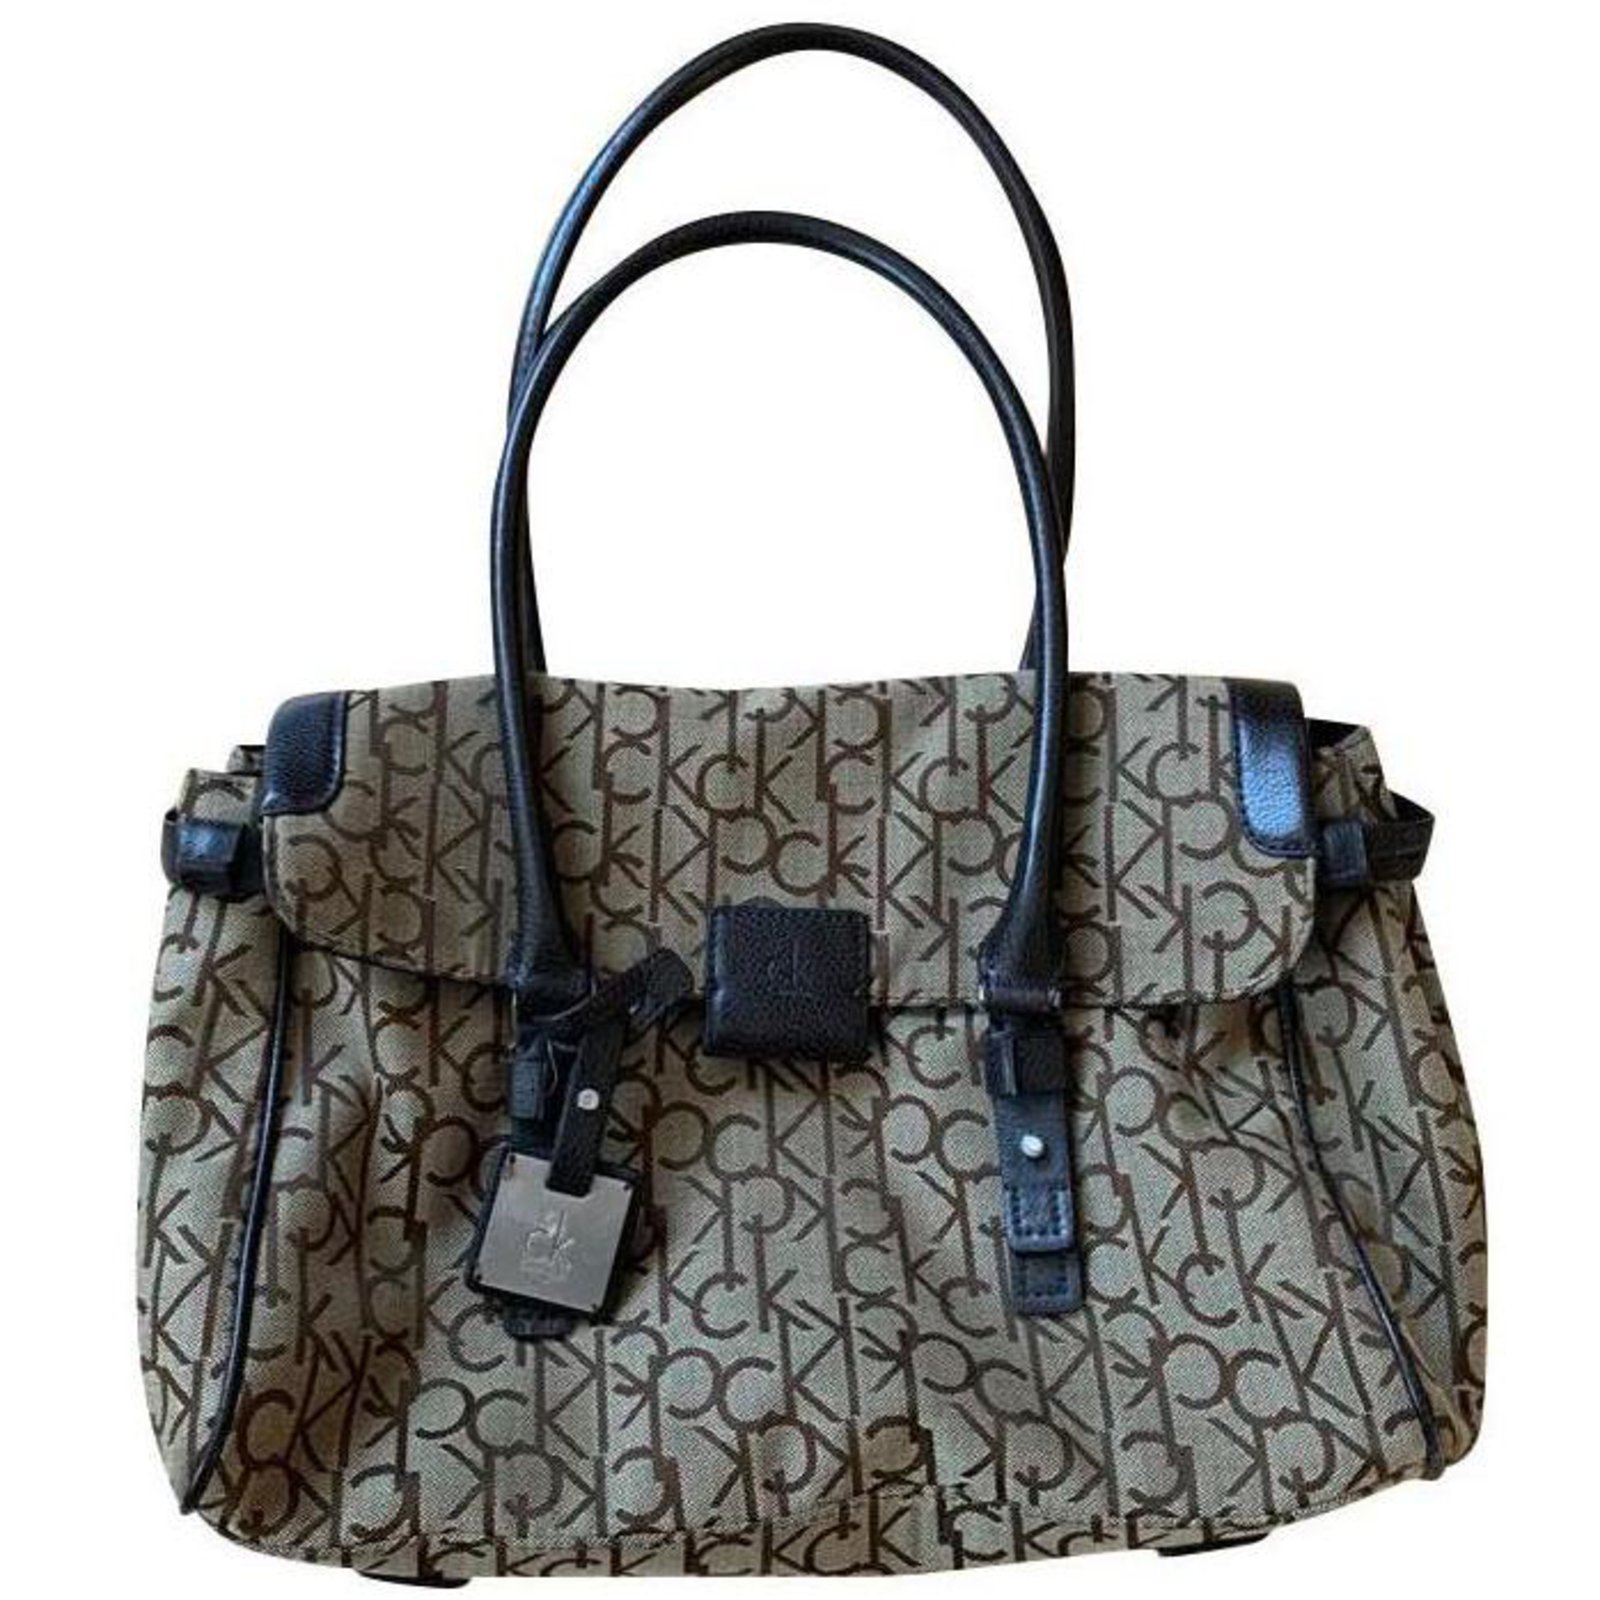  Calvin Klein: Handbags + Bags